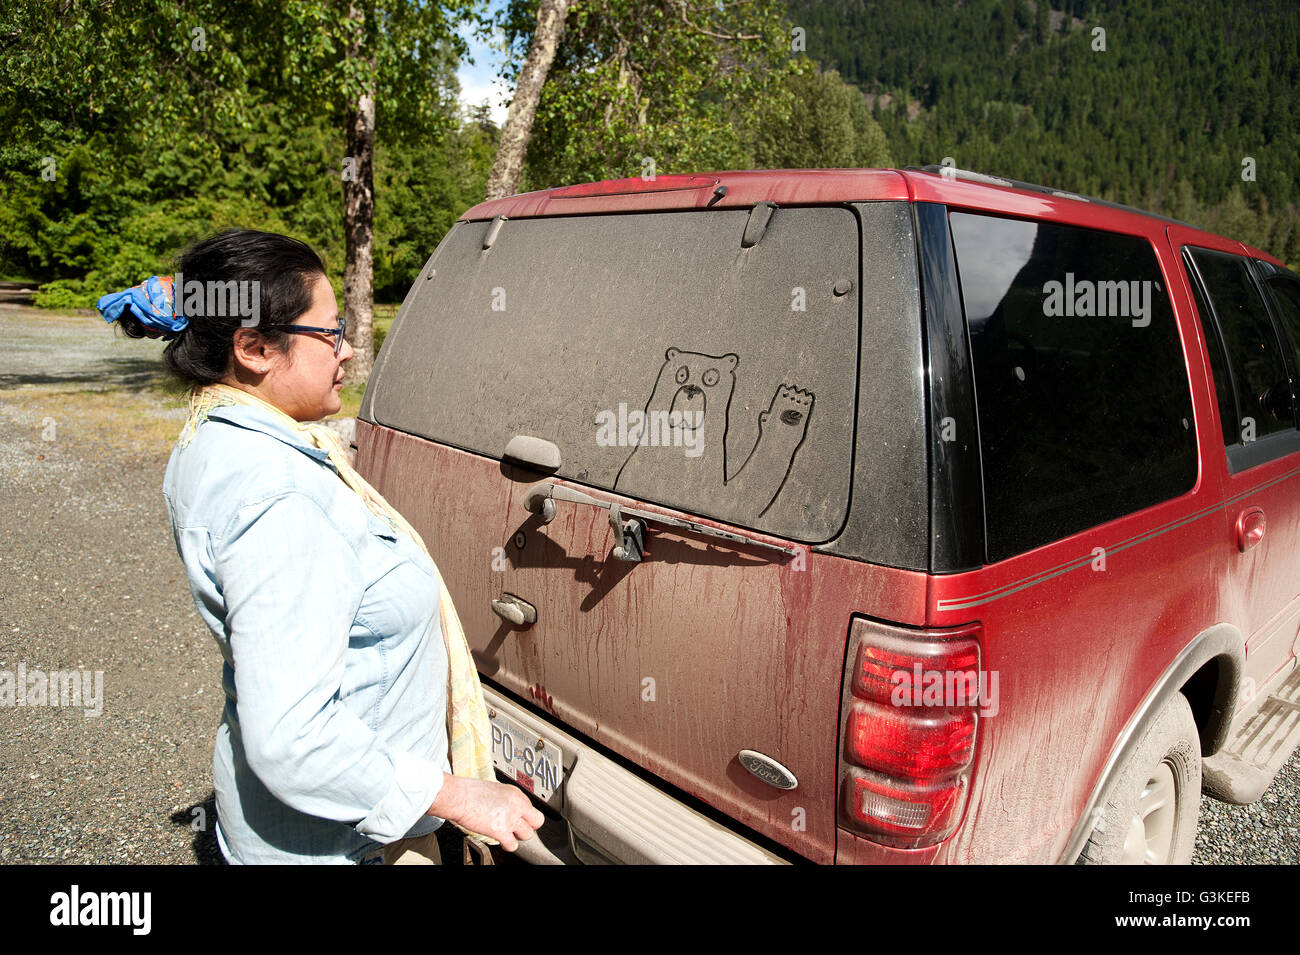 Una donna richiama un orso in sporco sul retro di un autocarro, Birkenhead Parco Provinciale, a nord di Pemberton, British Columbia, Canada. Foto Stock